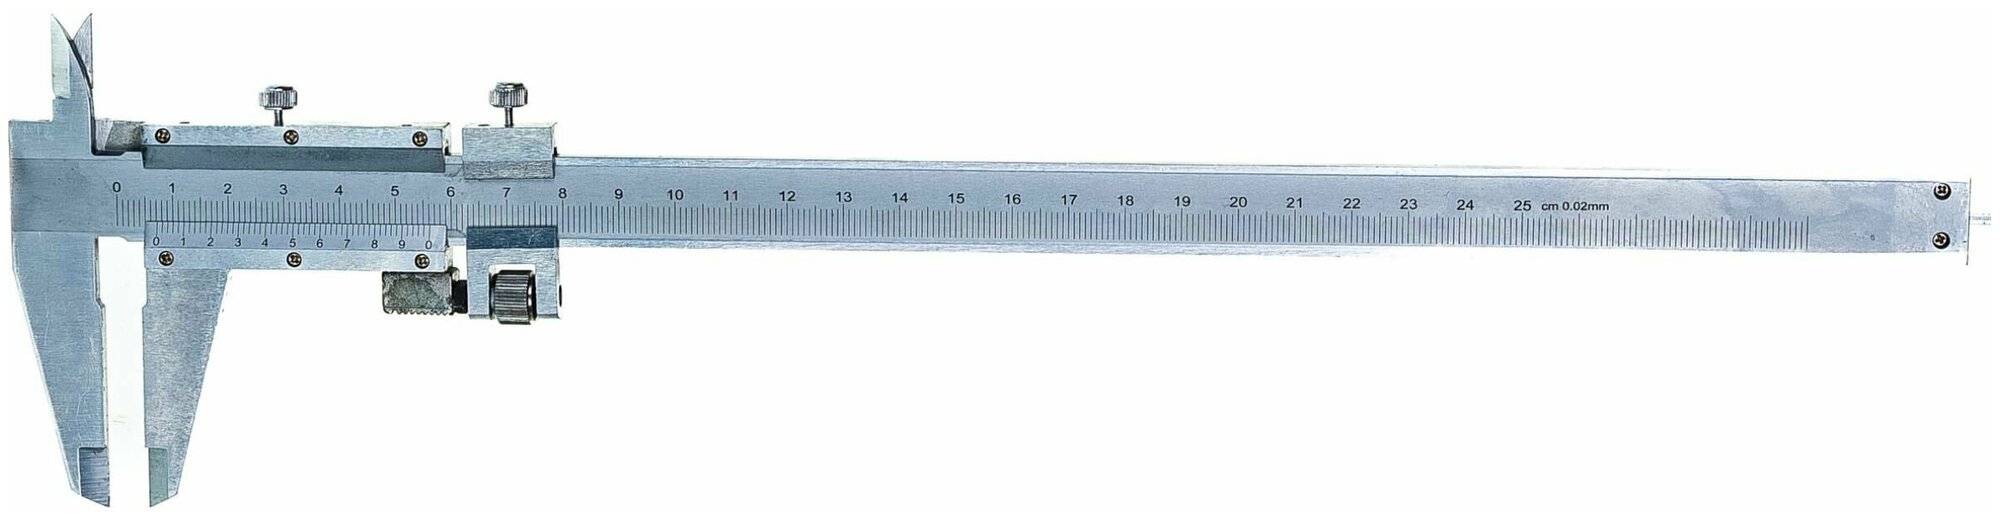 Штангенциркуль 250 мм цена деления 0.02 мм металлический с глубиномером Matrix